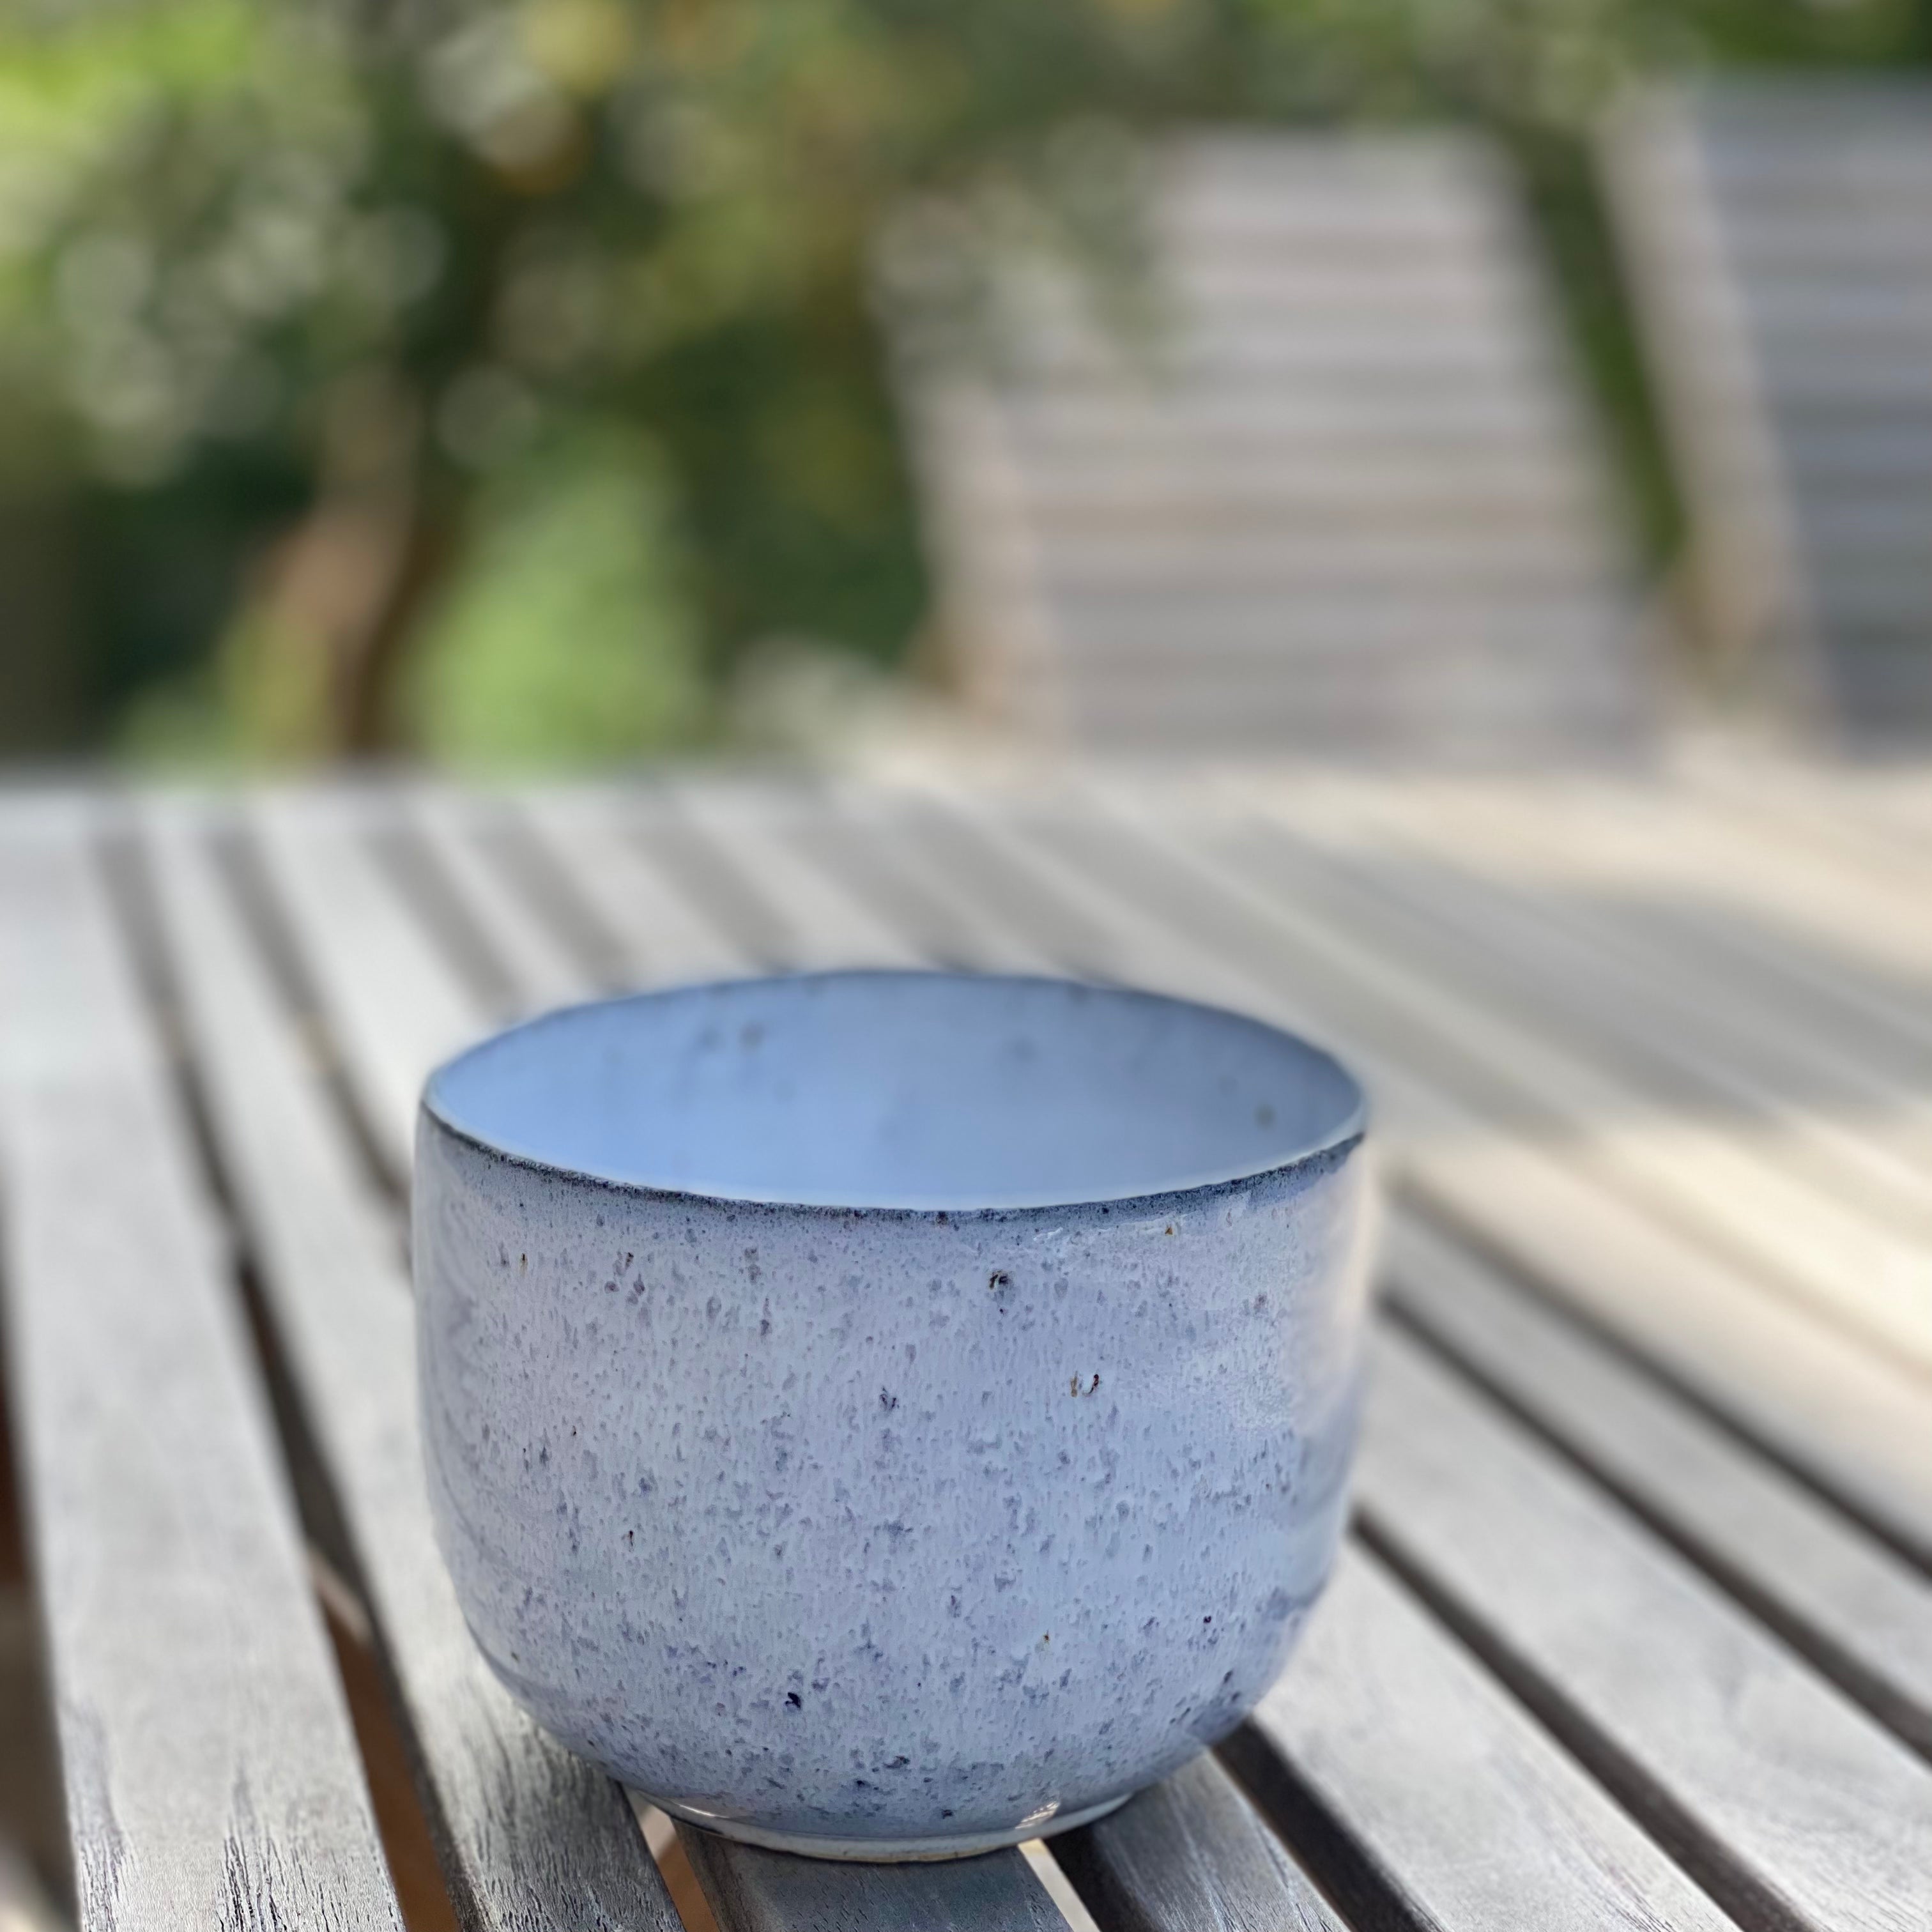 Tasja P teacup Mirabelle - light blue